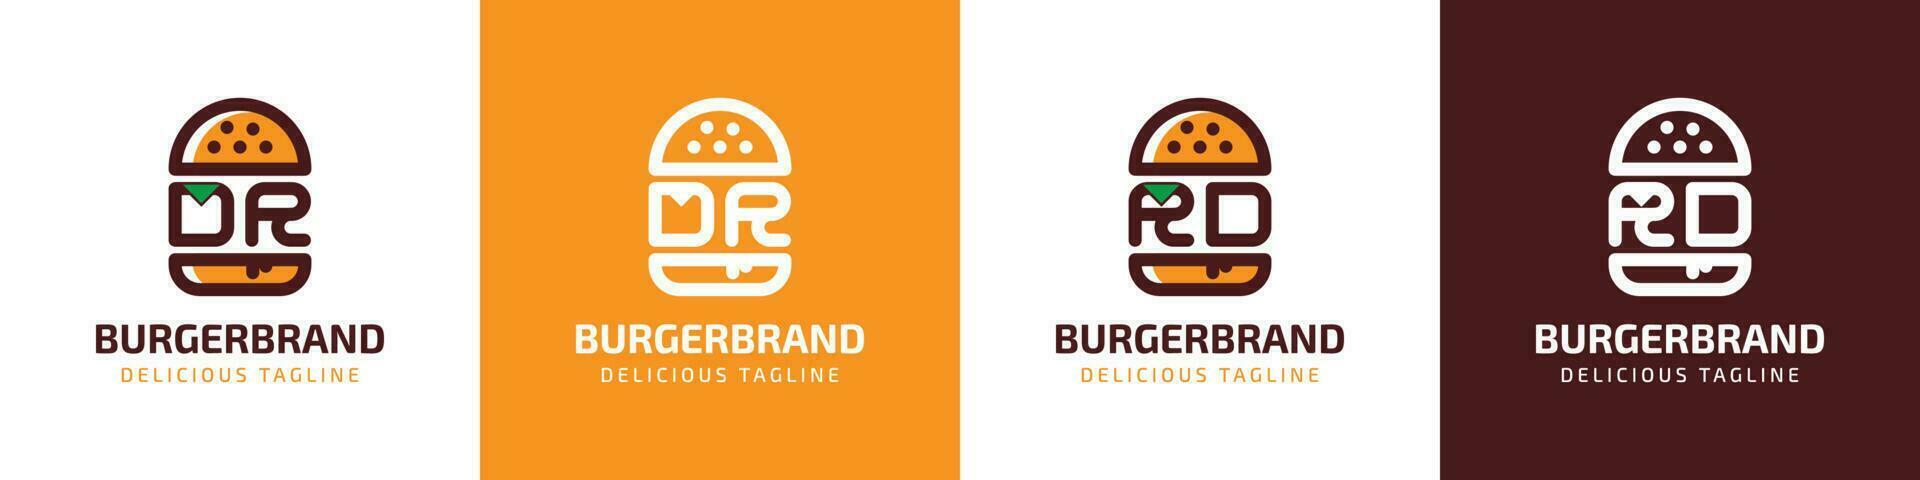 brev dr och rd burger logotyp, lämplig för några företag relaterad till burger med dr eller rd initialer. vektor